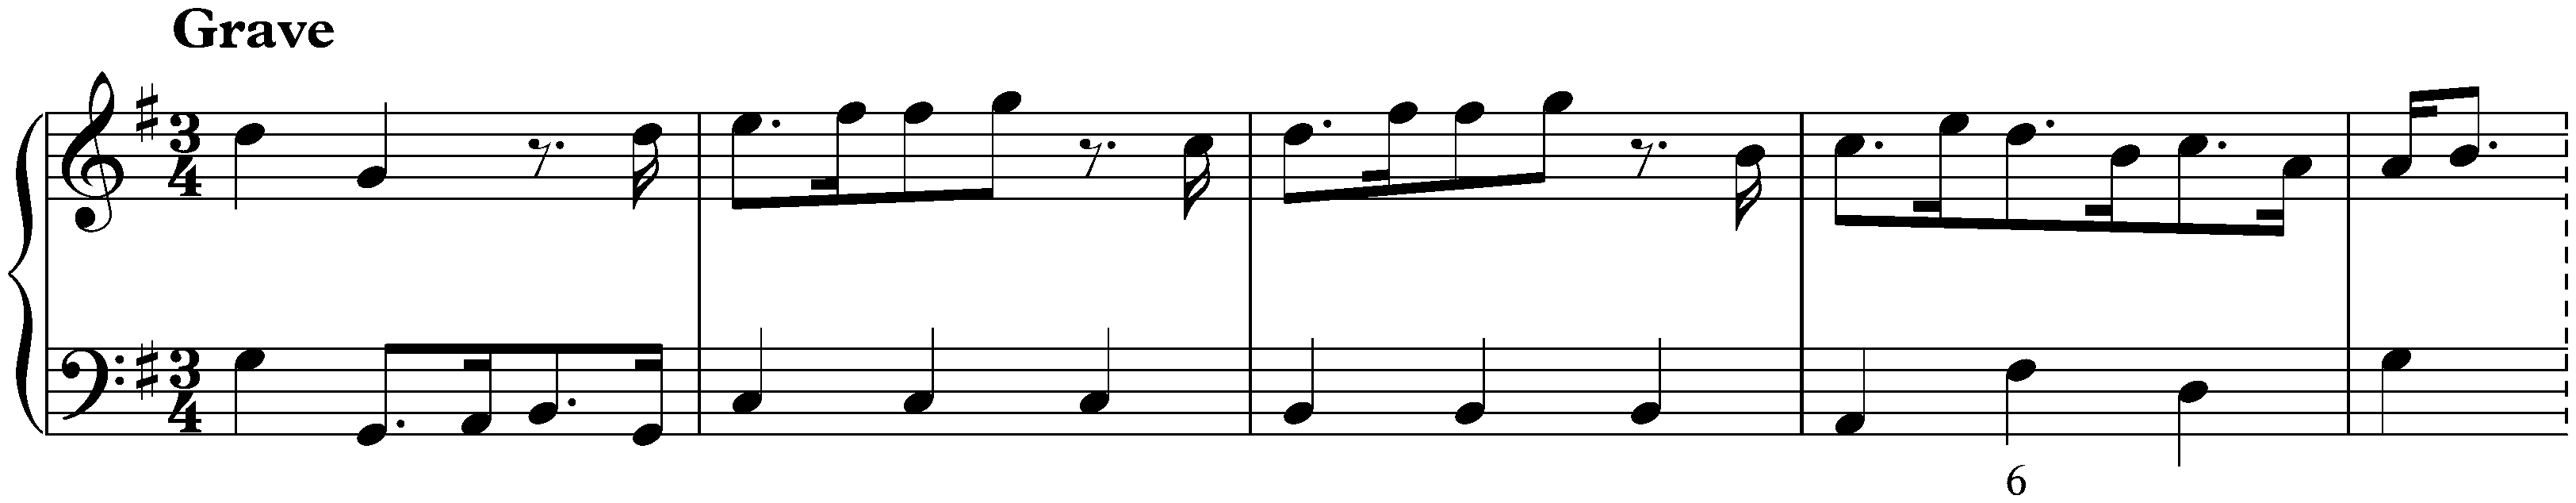 Sonata in G major, K. 91; 3. Grave